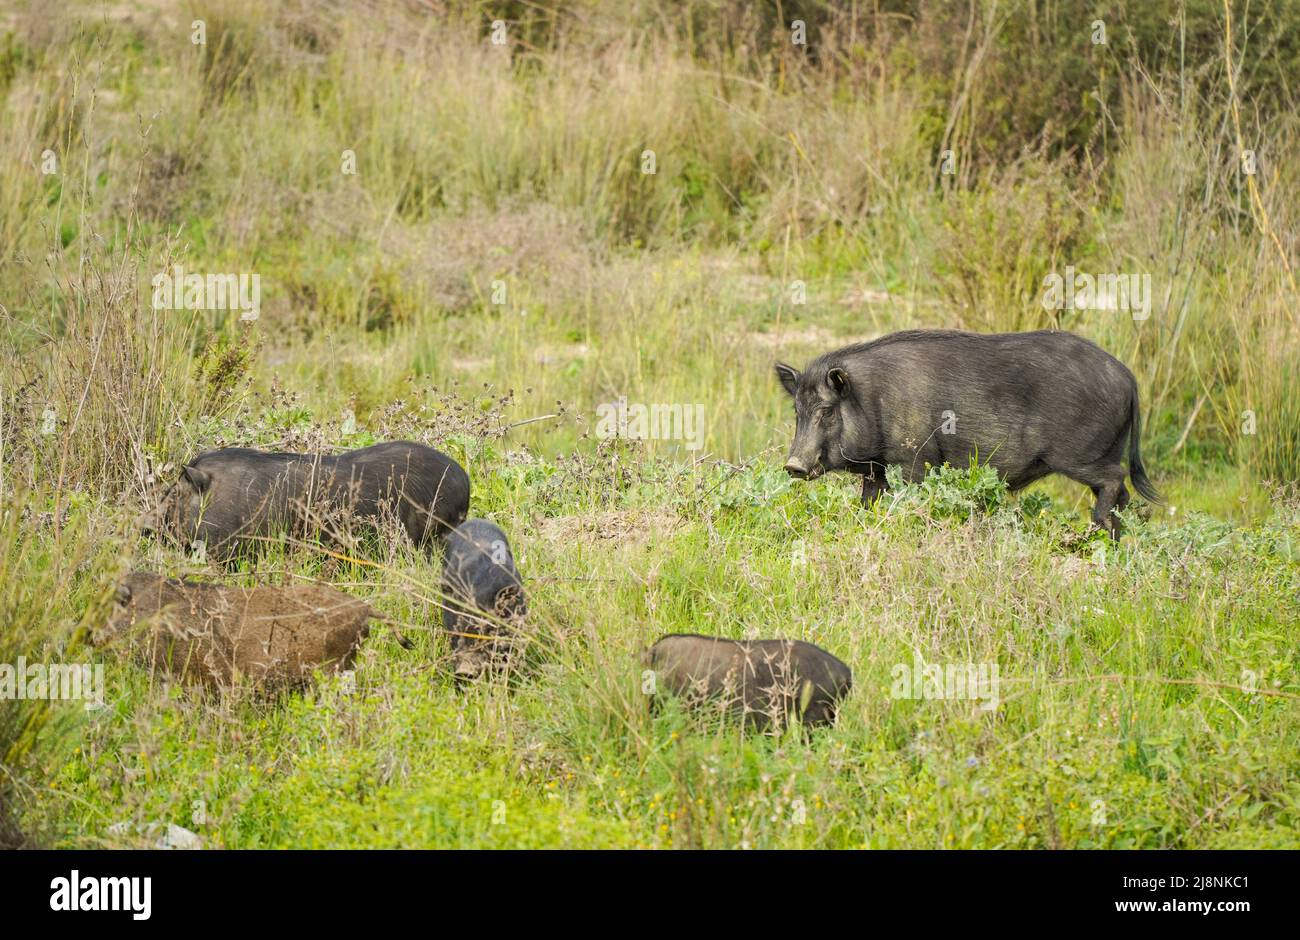 Wildschweinhybriden, Schwein-Hybriden, die in der Nähe einer Urbanisation in Spanien herumwandern. Stockfoto